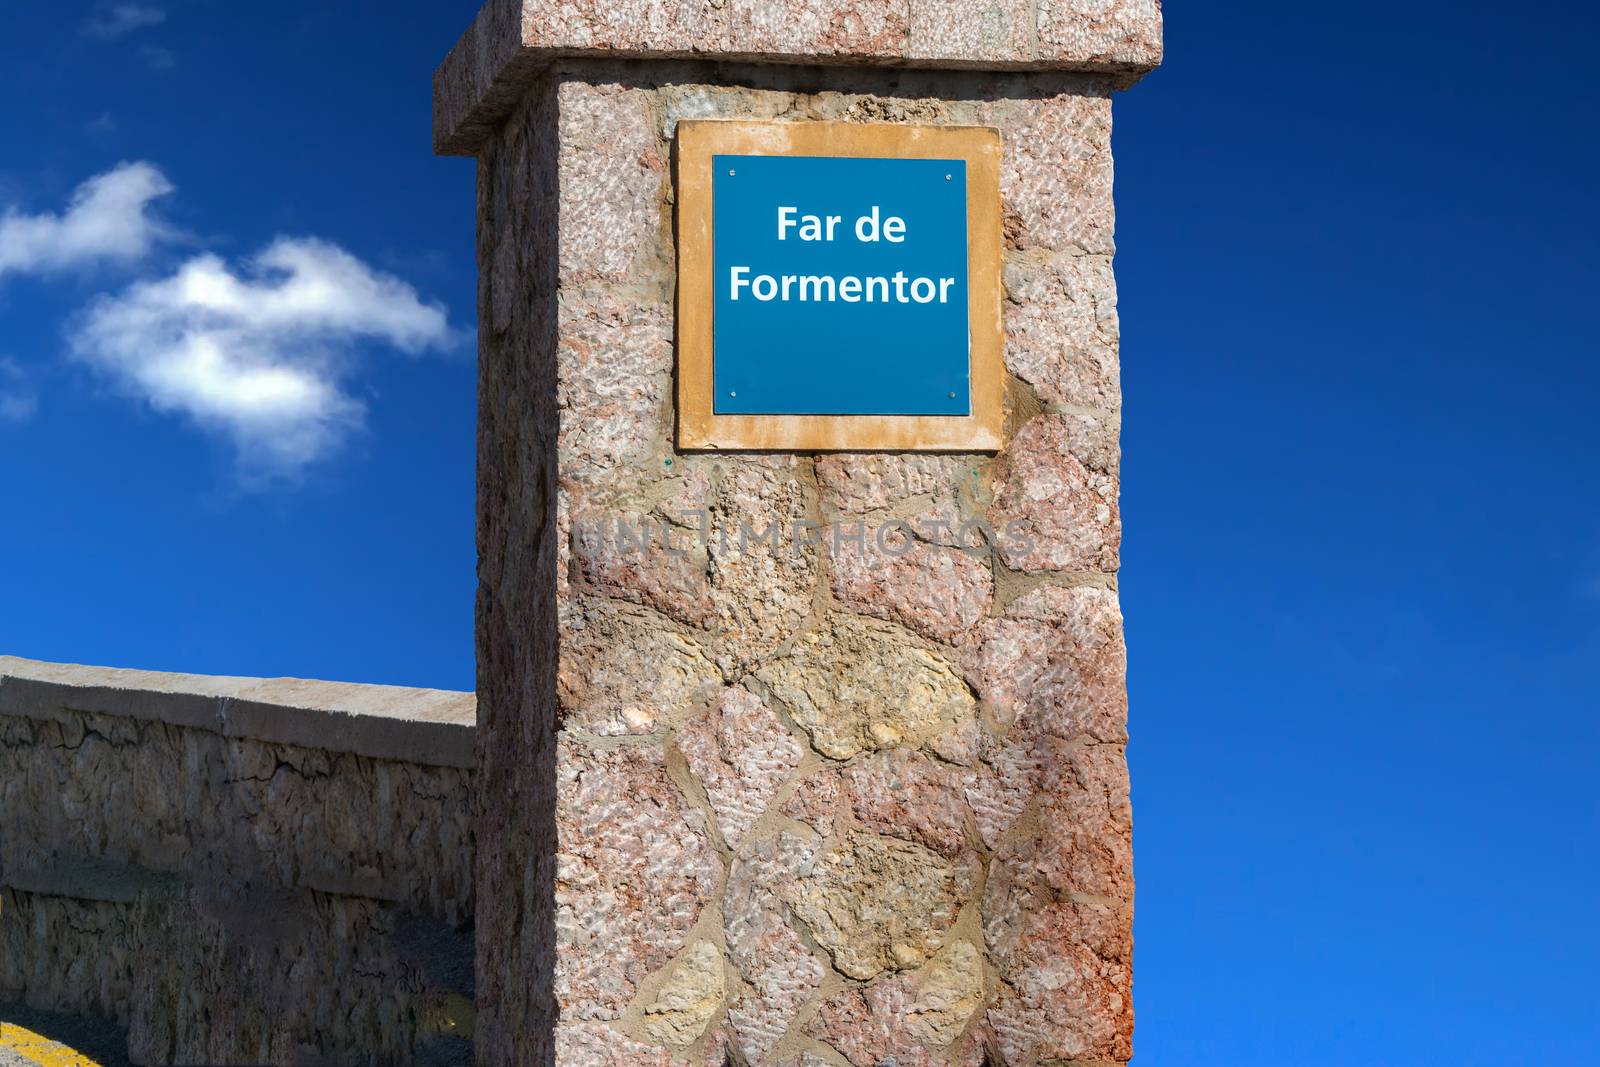 Information board Far de Formentor by JFsPic